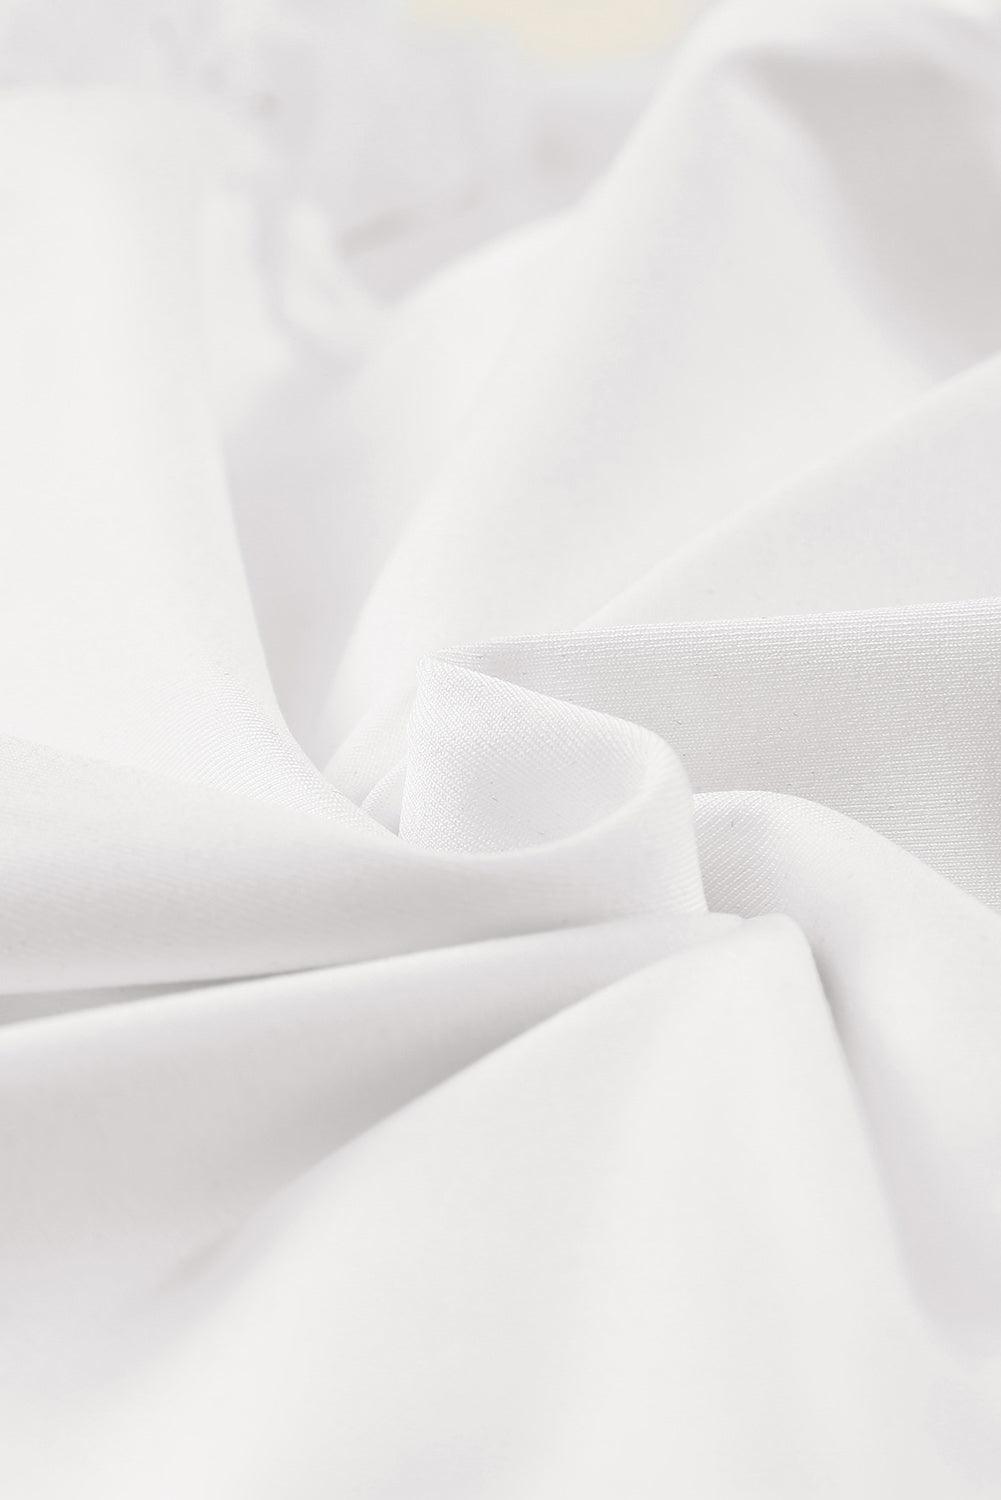 Ivory Lace Short Sleeve Wrap V Neck Bodysuit for Women - Ninonine